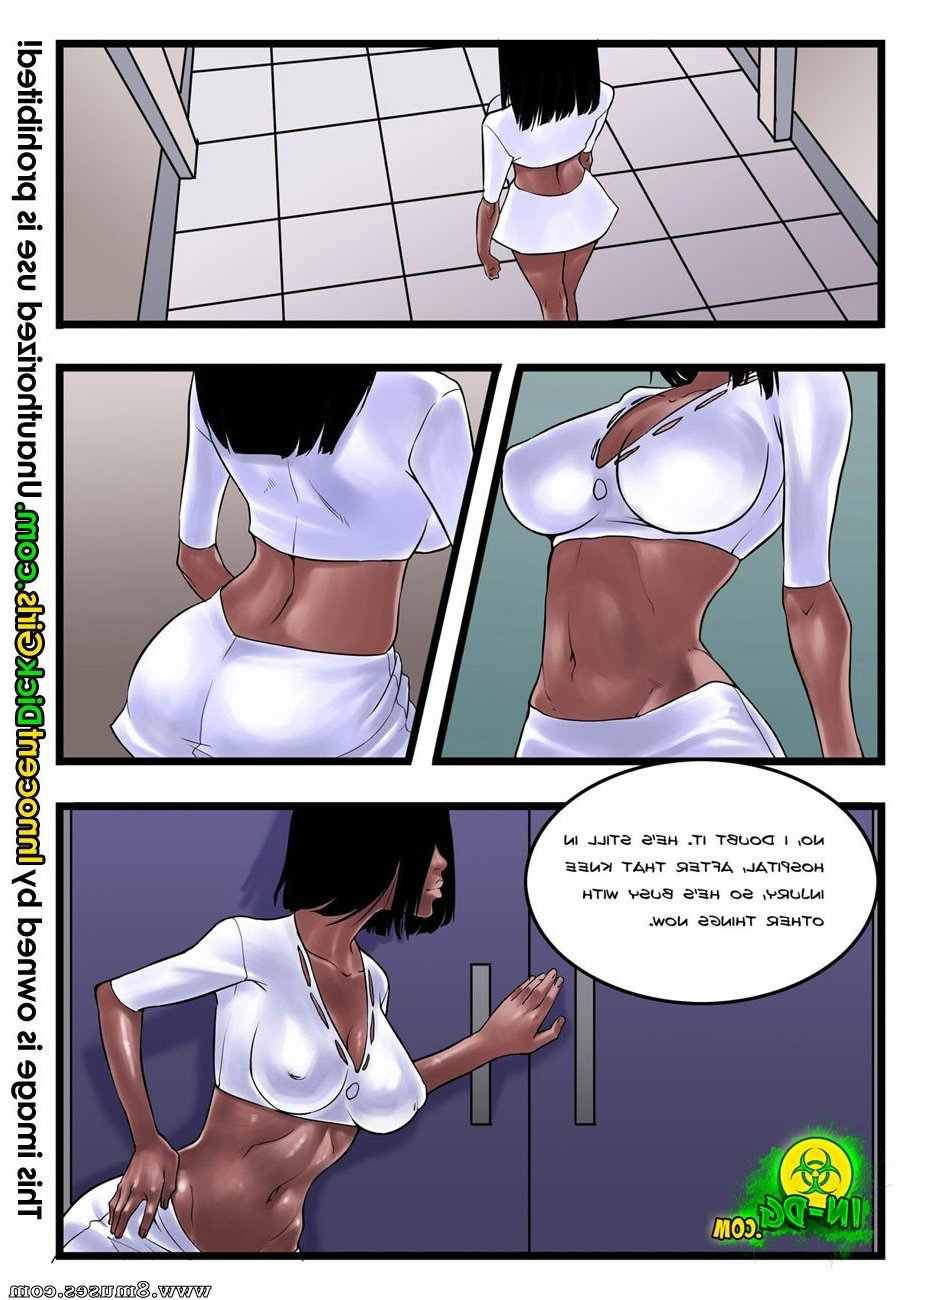 Innocent-Dickgirls-Comics/The-Winners-Reward The_Winners_Reward__8muses_-_Sex_and_Porn_Comics_4.jpg